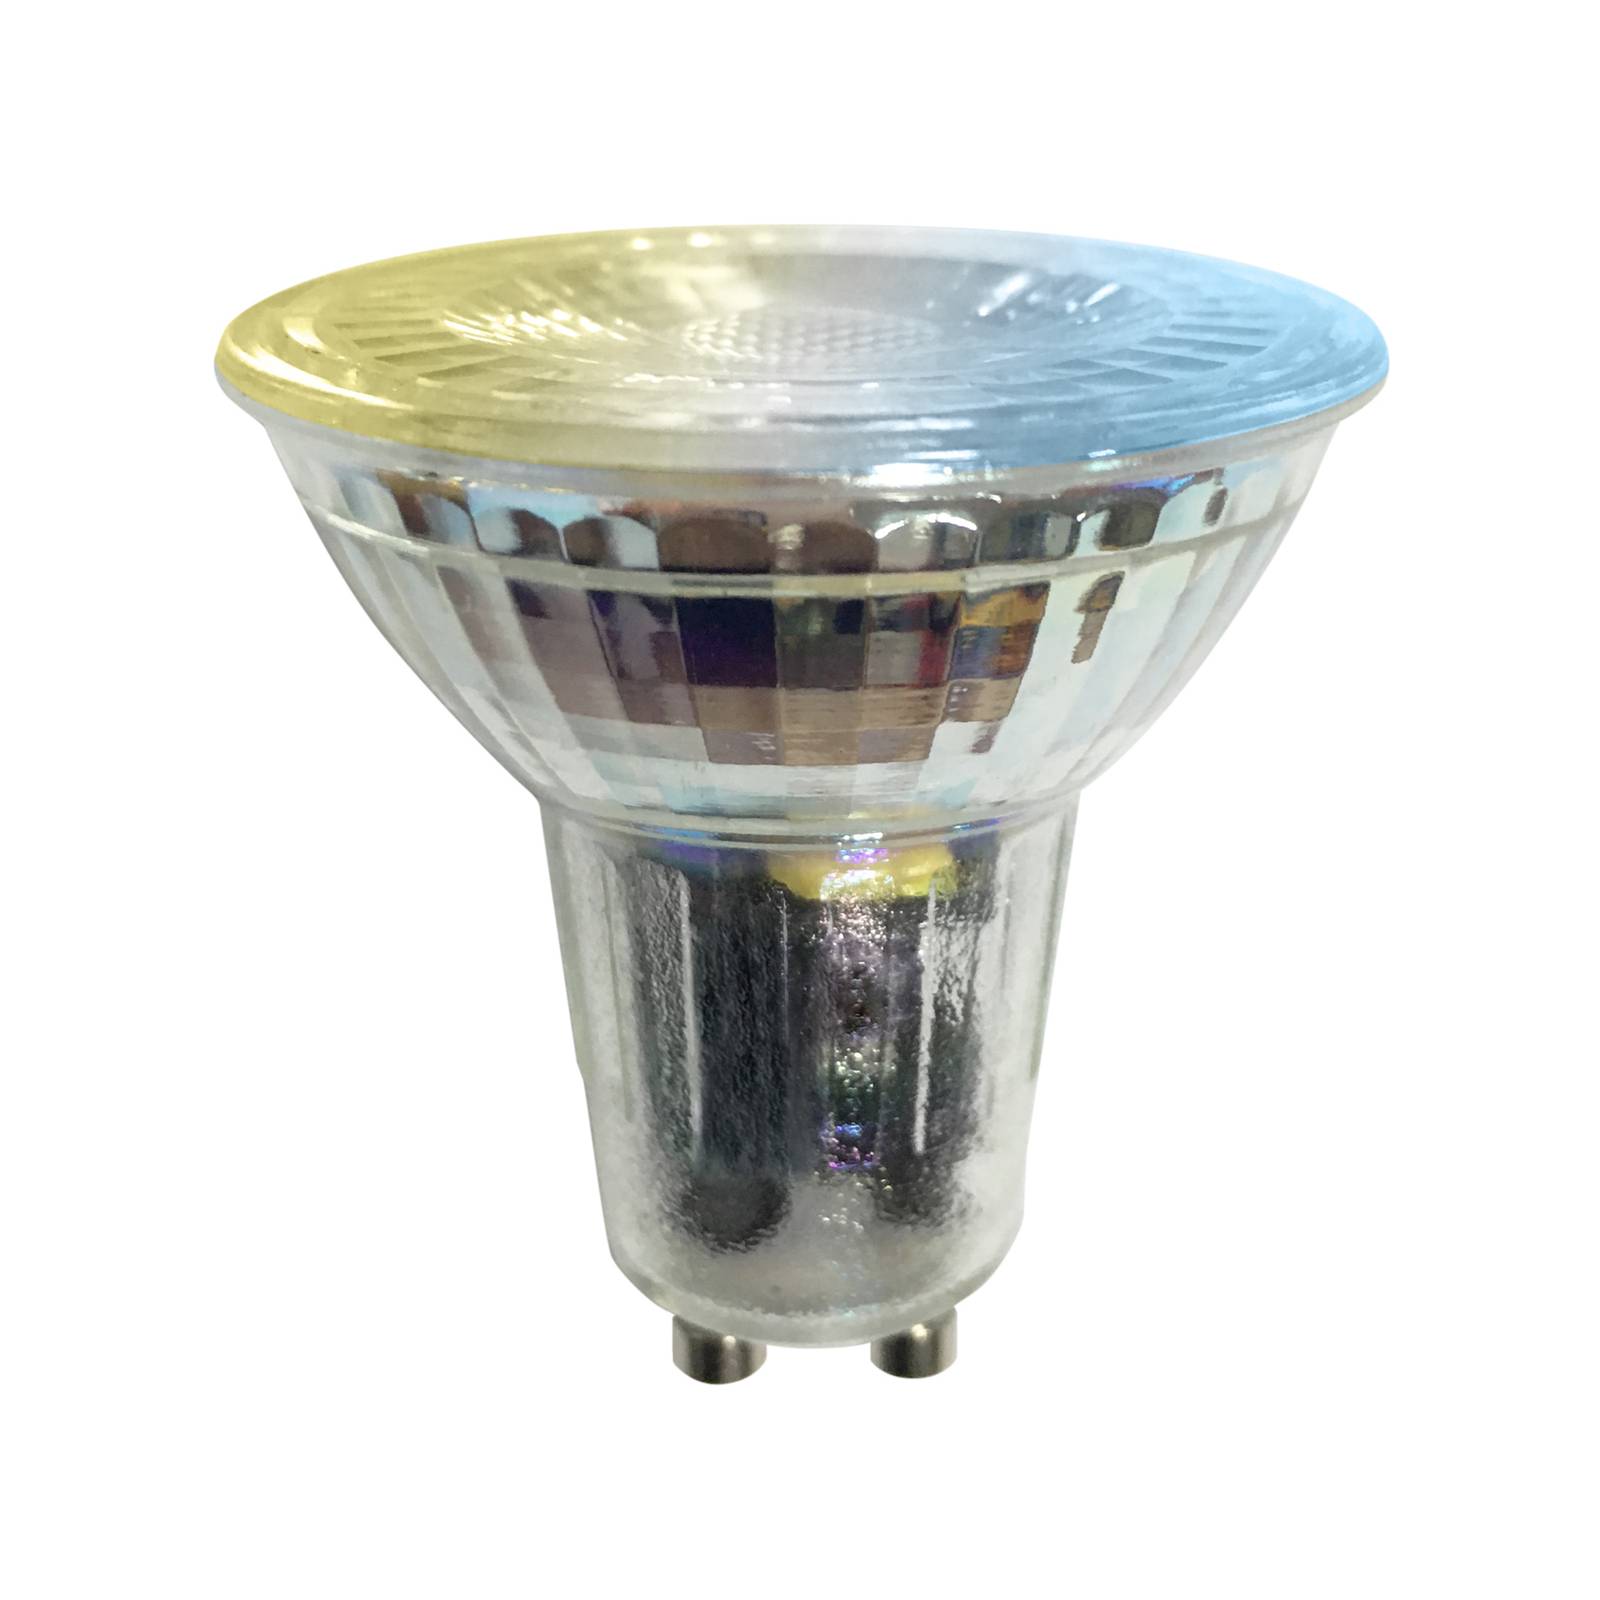 PRIOS Smart LED-GU10 Glas 4,7W WLAN klar tunable white